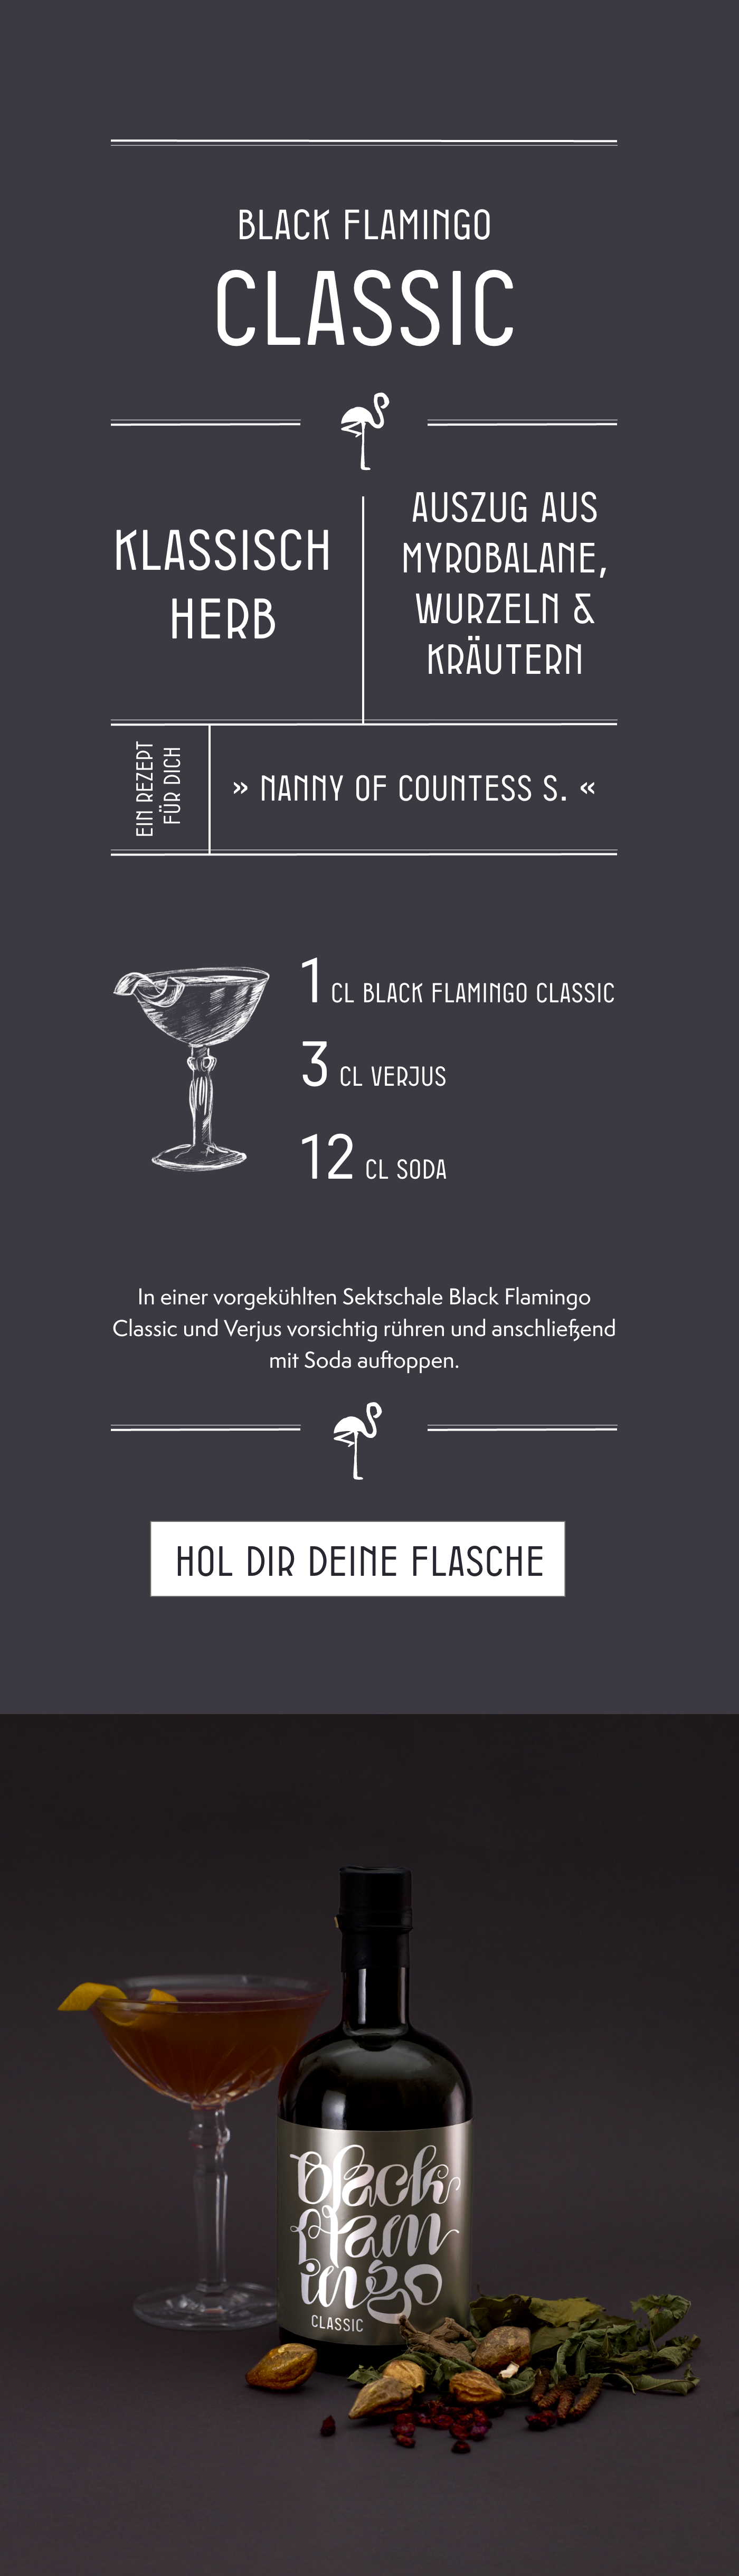 Black Flamingo Classic – klassisch herb